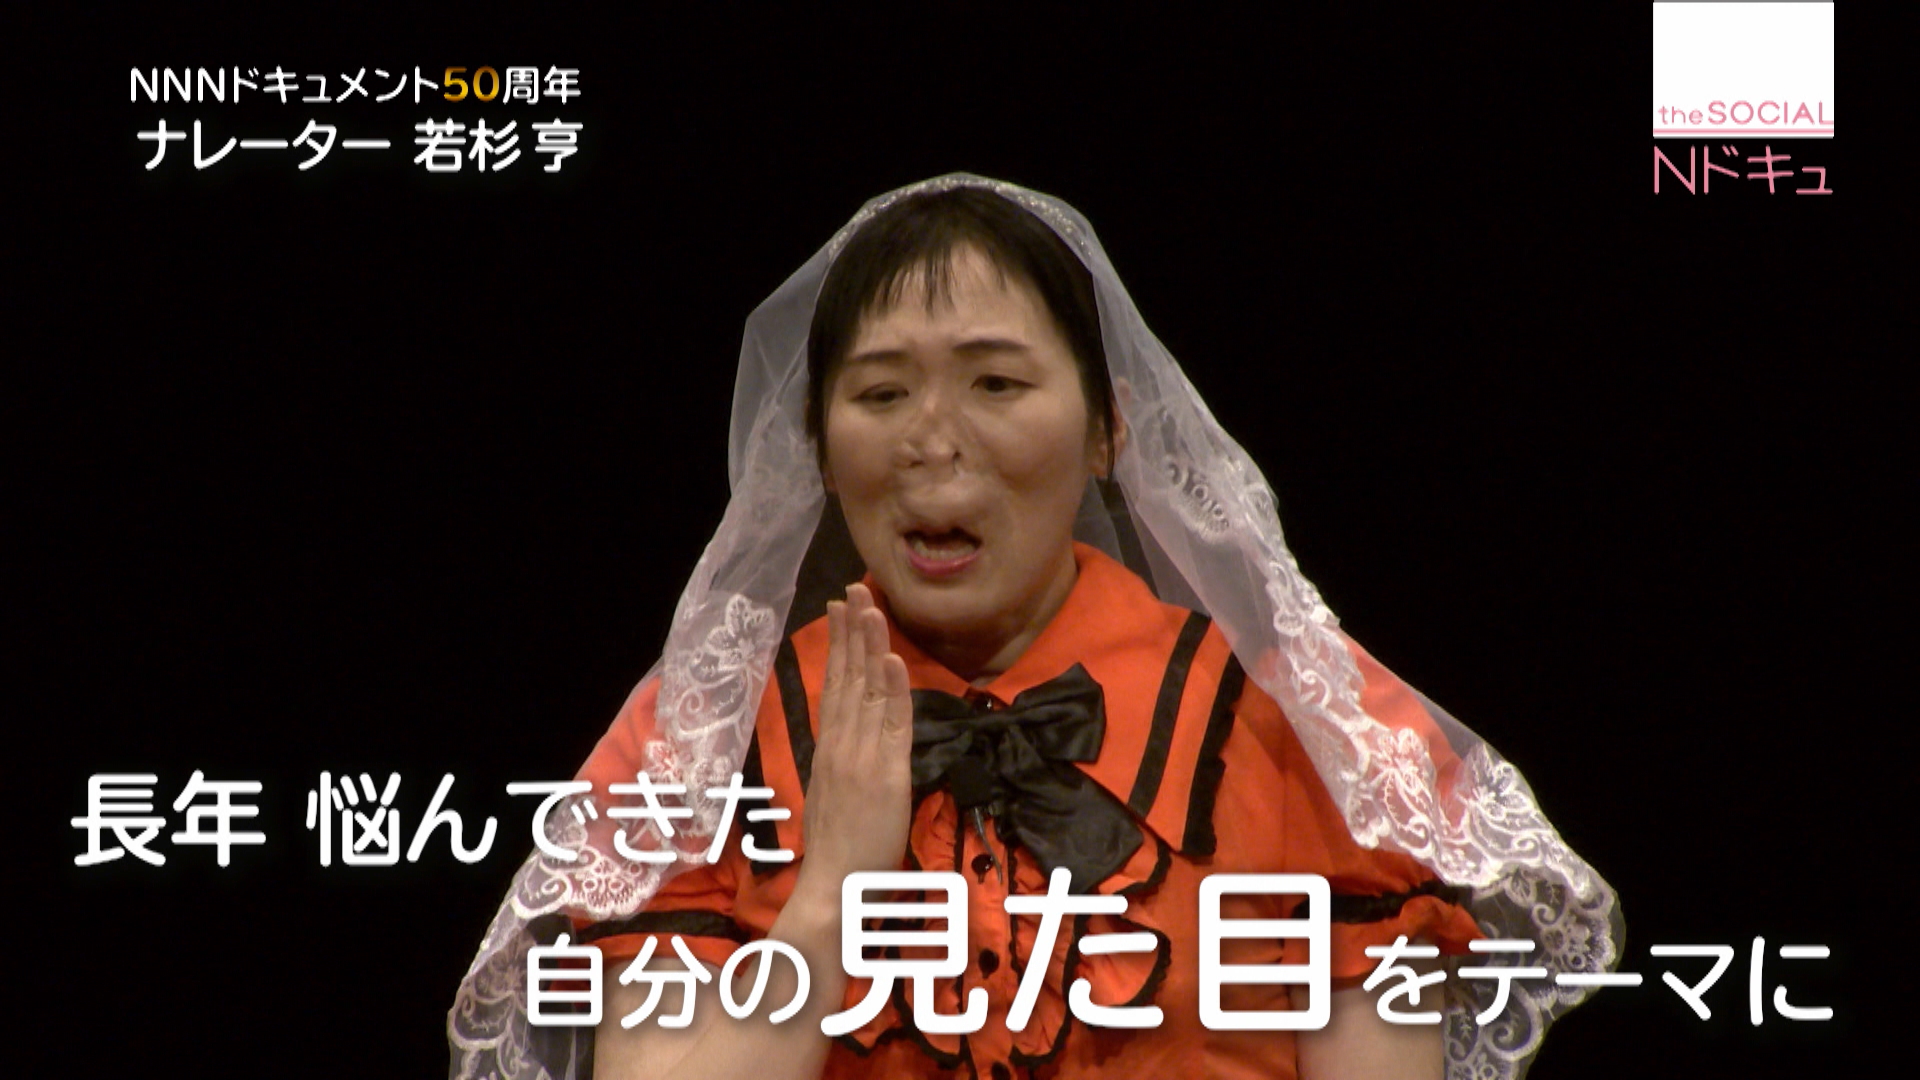 自分の“見た目”テーマに一人芝居する女性 日テレNEWS24 Yahoo! JAPAN